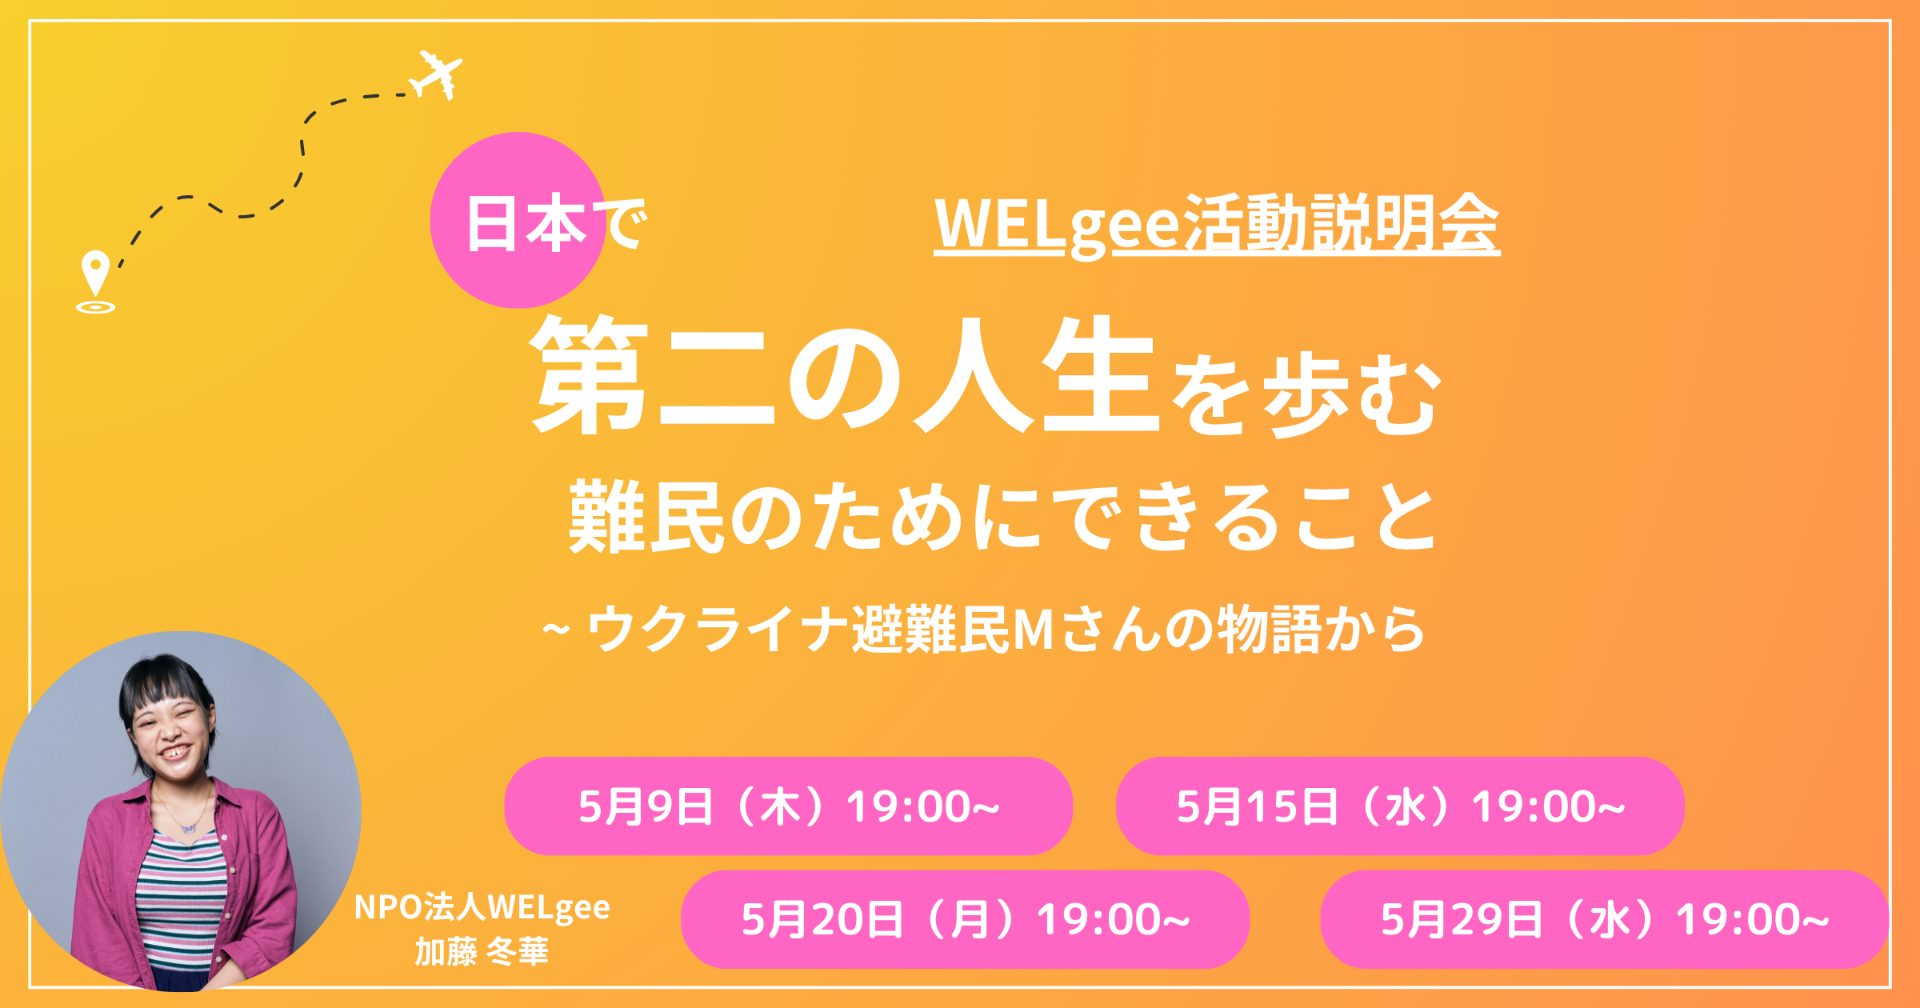 ≪WELgee活動説明会≫ 日本で「第二の人生」を歩む難民のためにできること　- ウクライナ避難民Mさんの物語から -